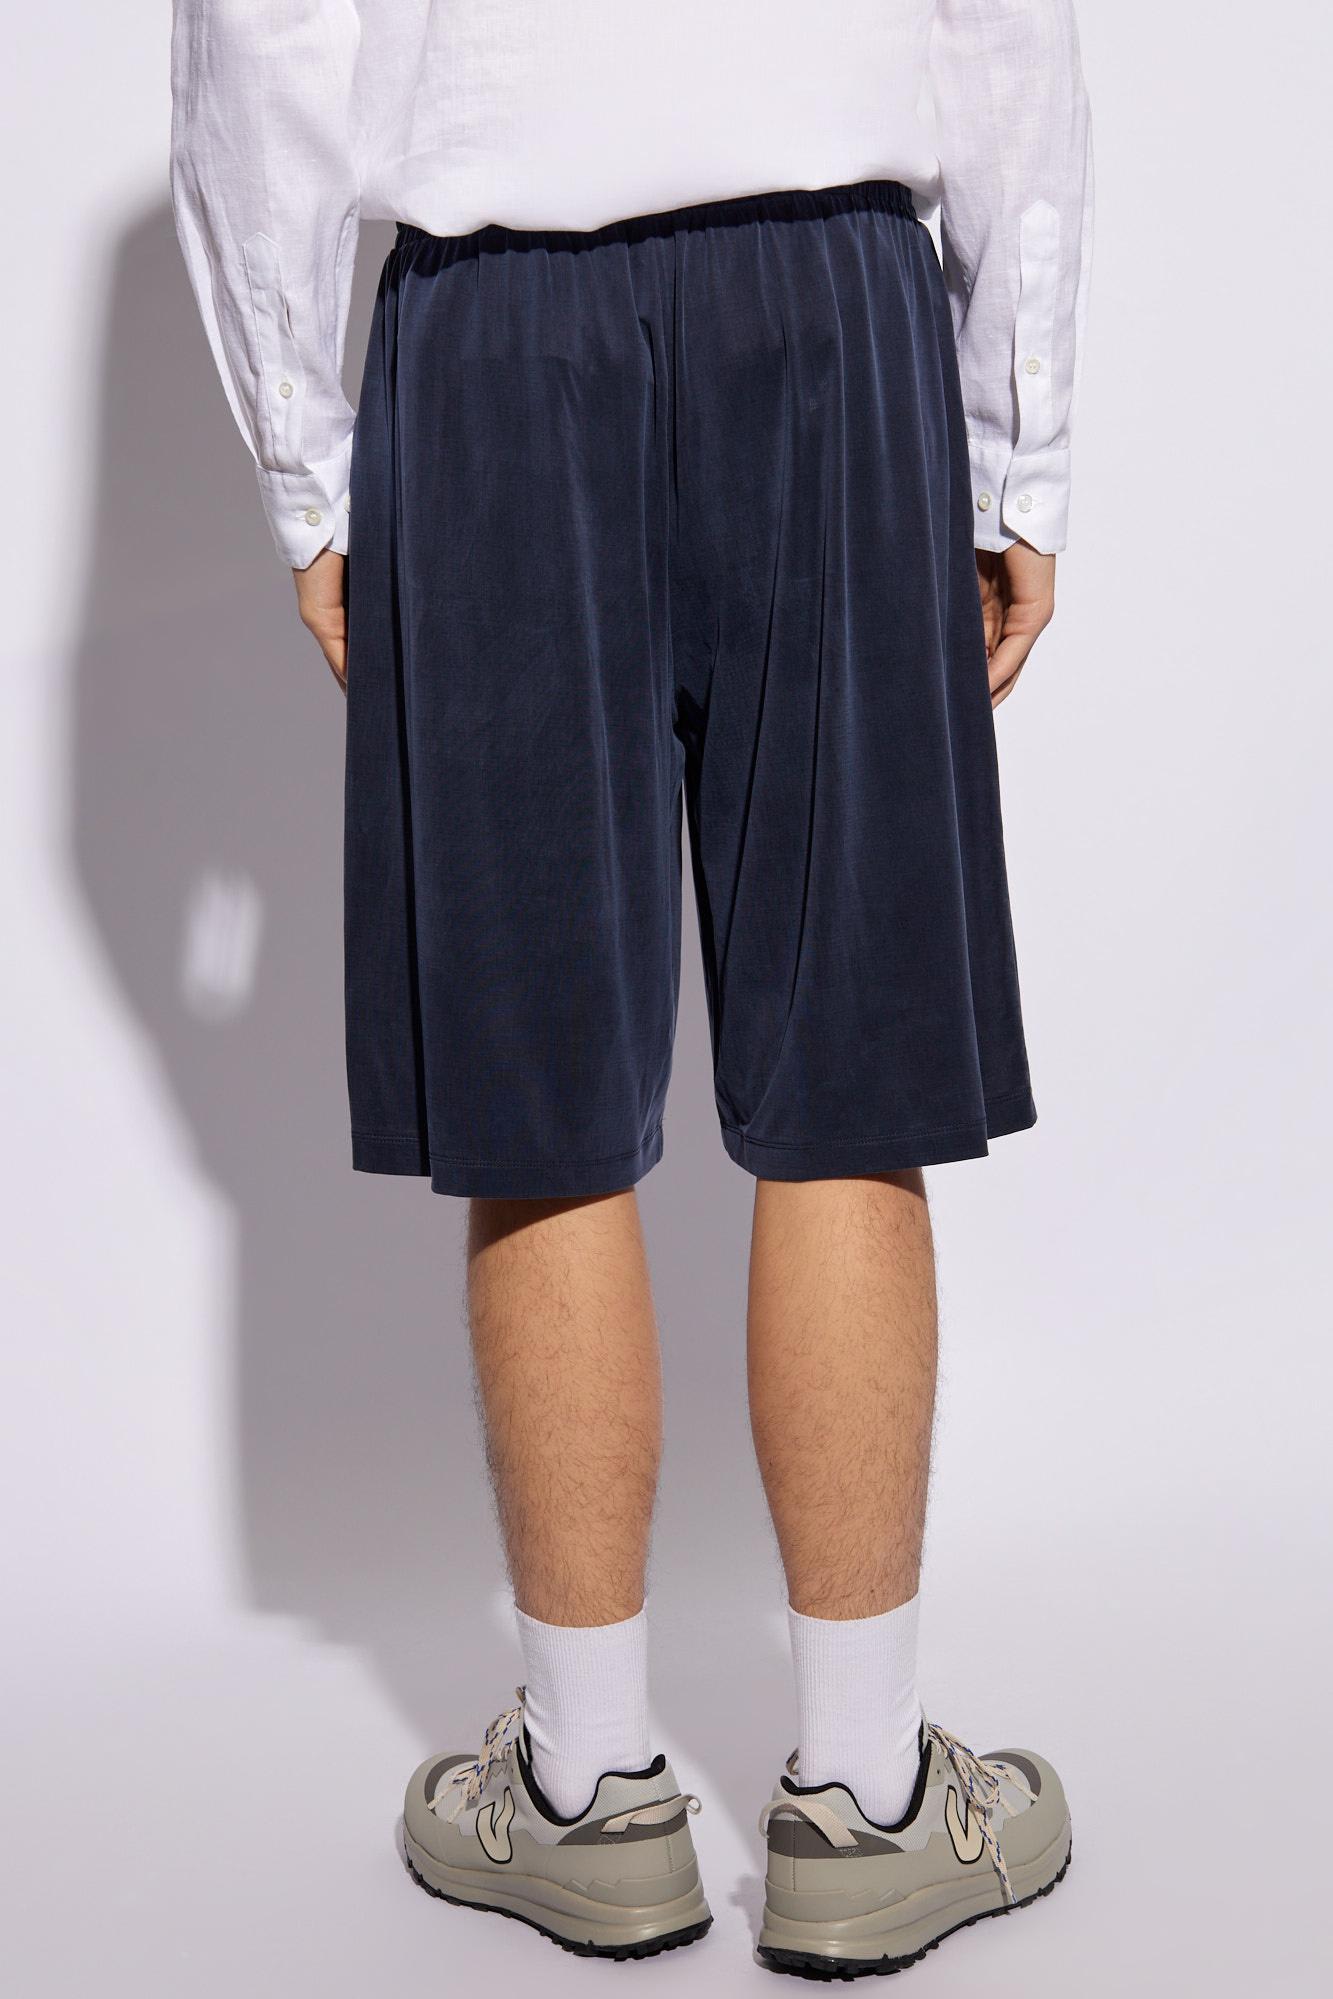 Shop Giorgio Armani Draped Shorts